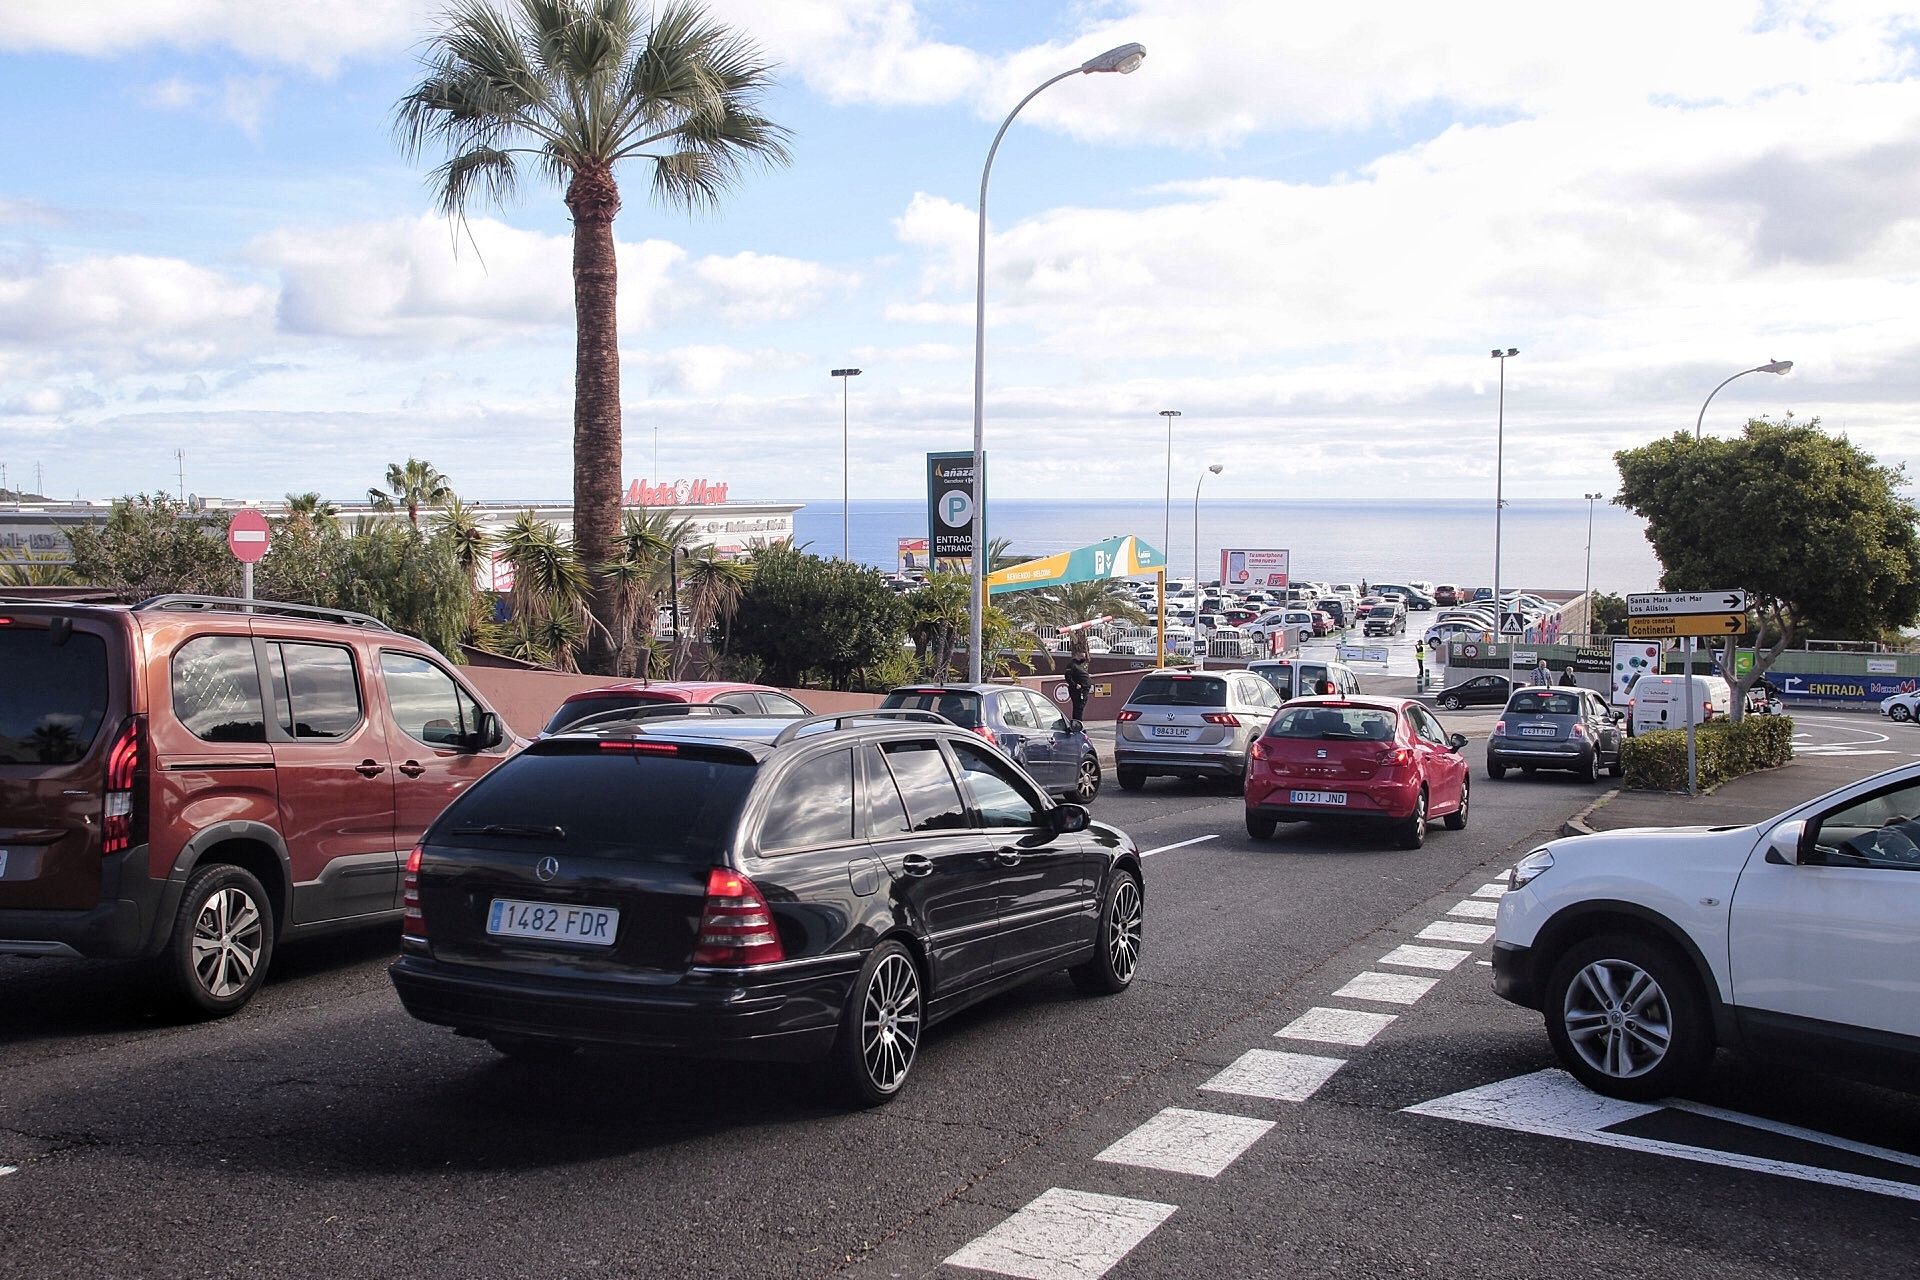 Santa Cruz de Tenerife bajo las nuevas restricciones por la Covid-19